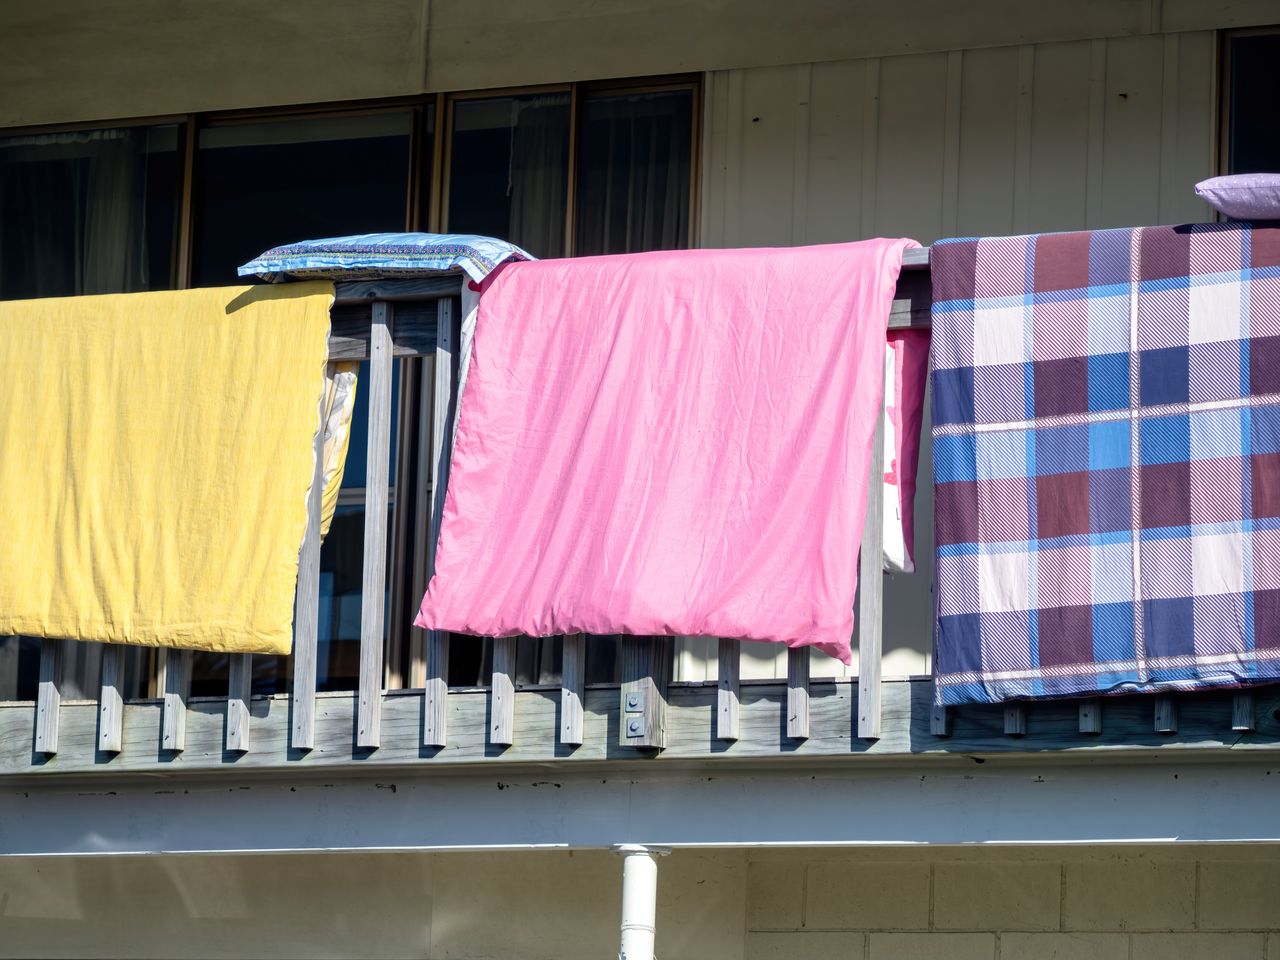 Suszysz pranie na balkonie? Lepiej miej tego świadomość